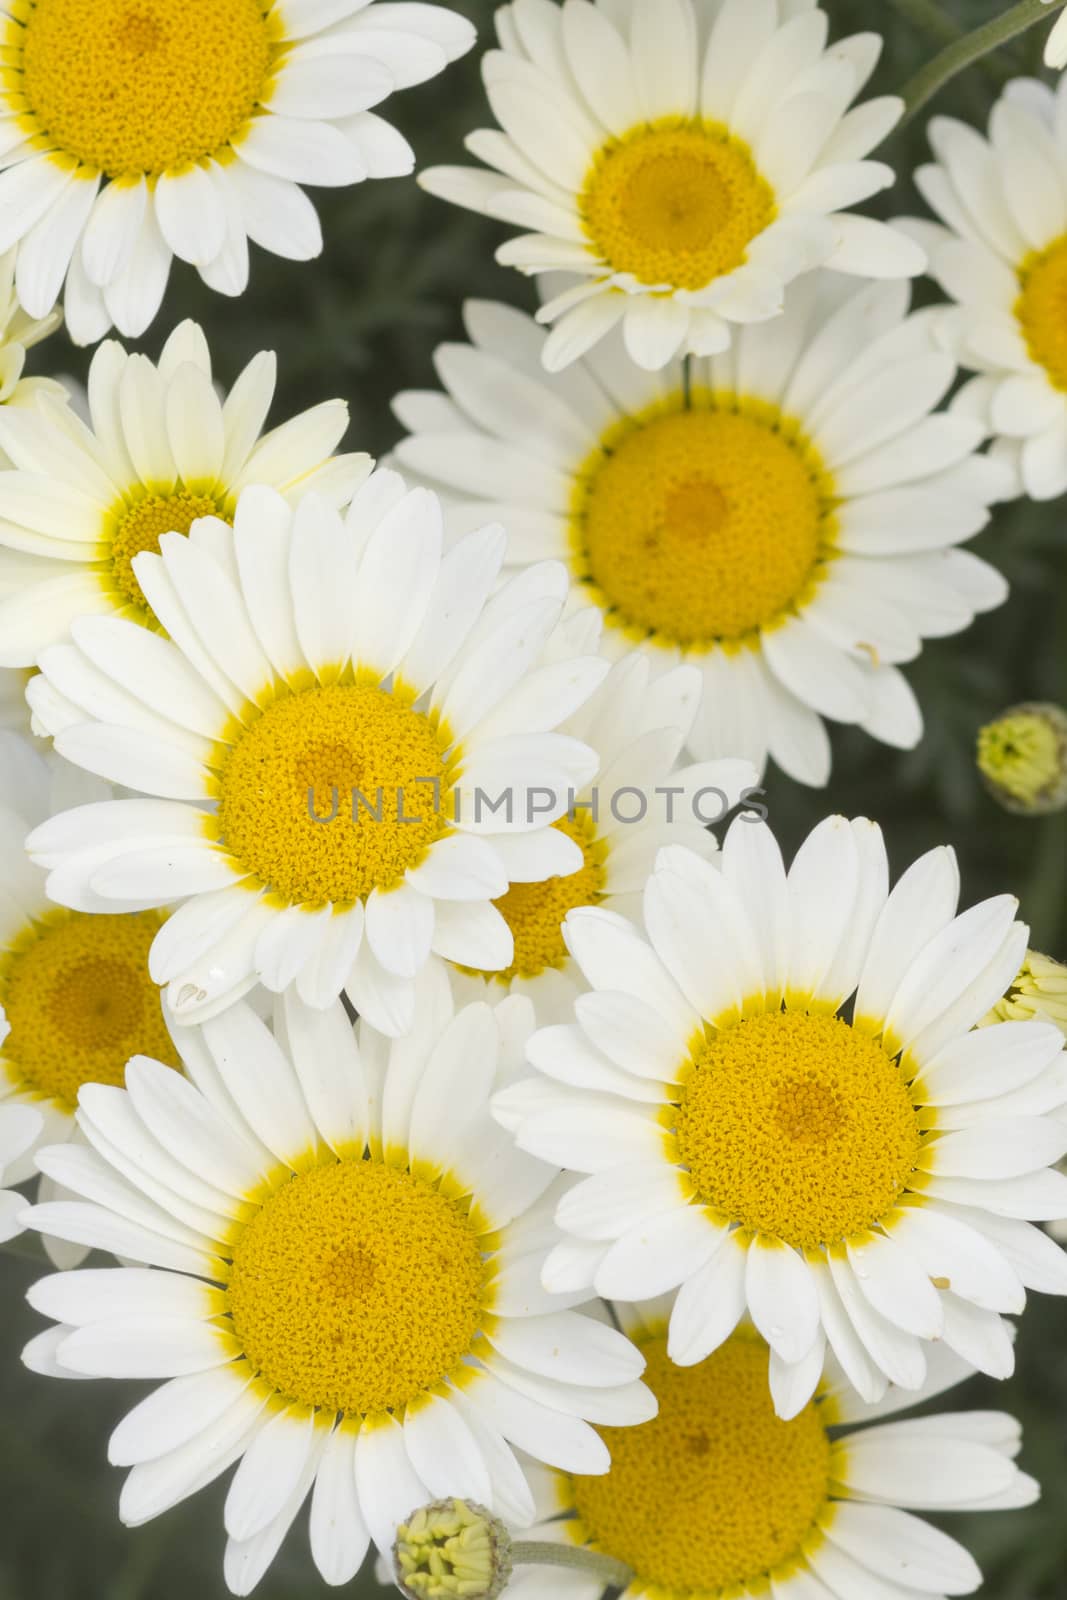 Daisy flowers yellow and white closeup macro 